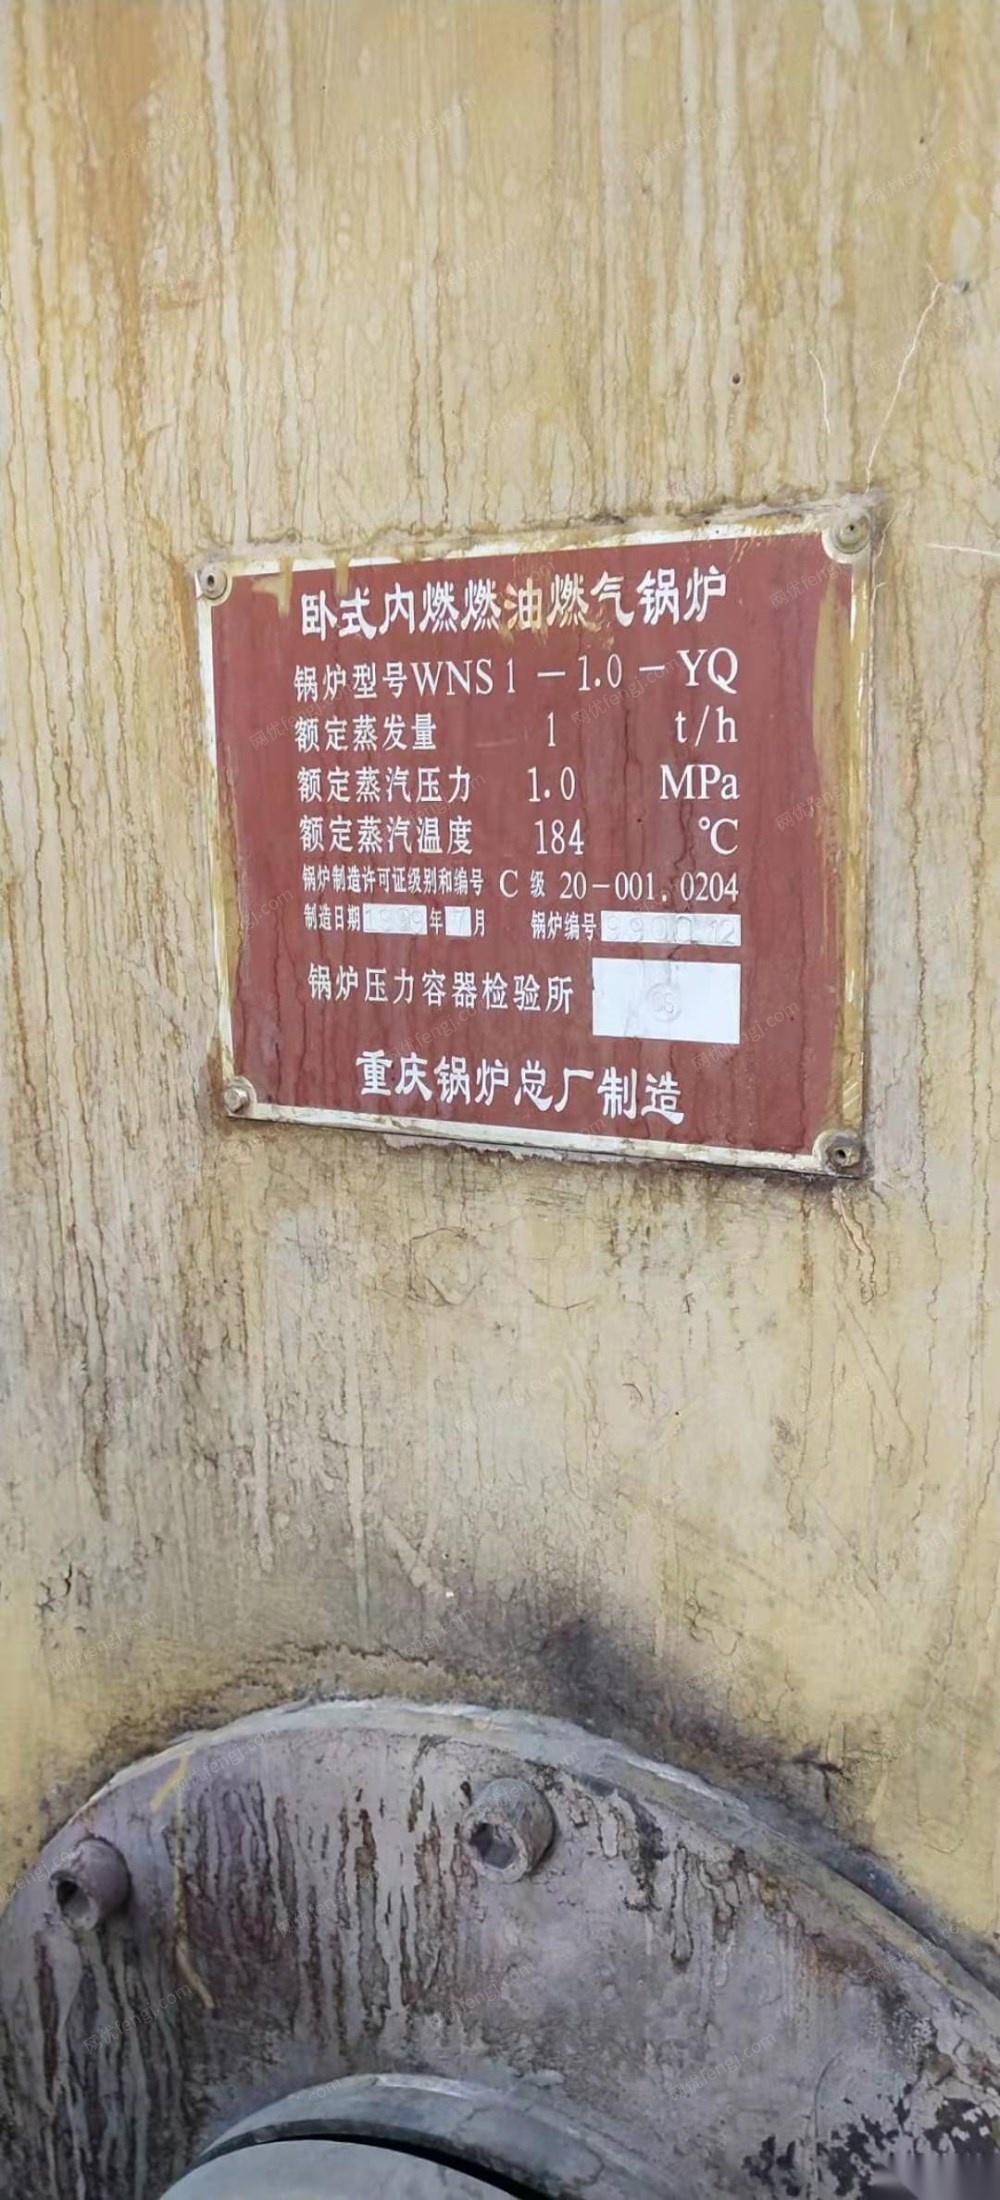 重庆渝北区一吨天然气锅炉转让 23000元